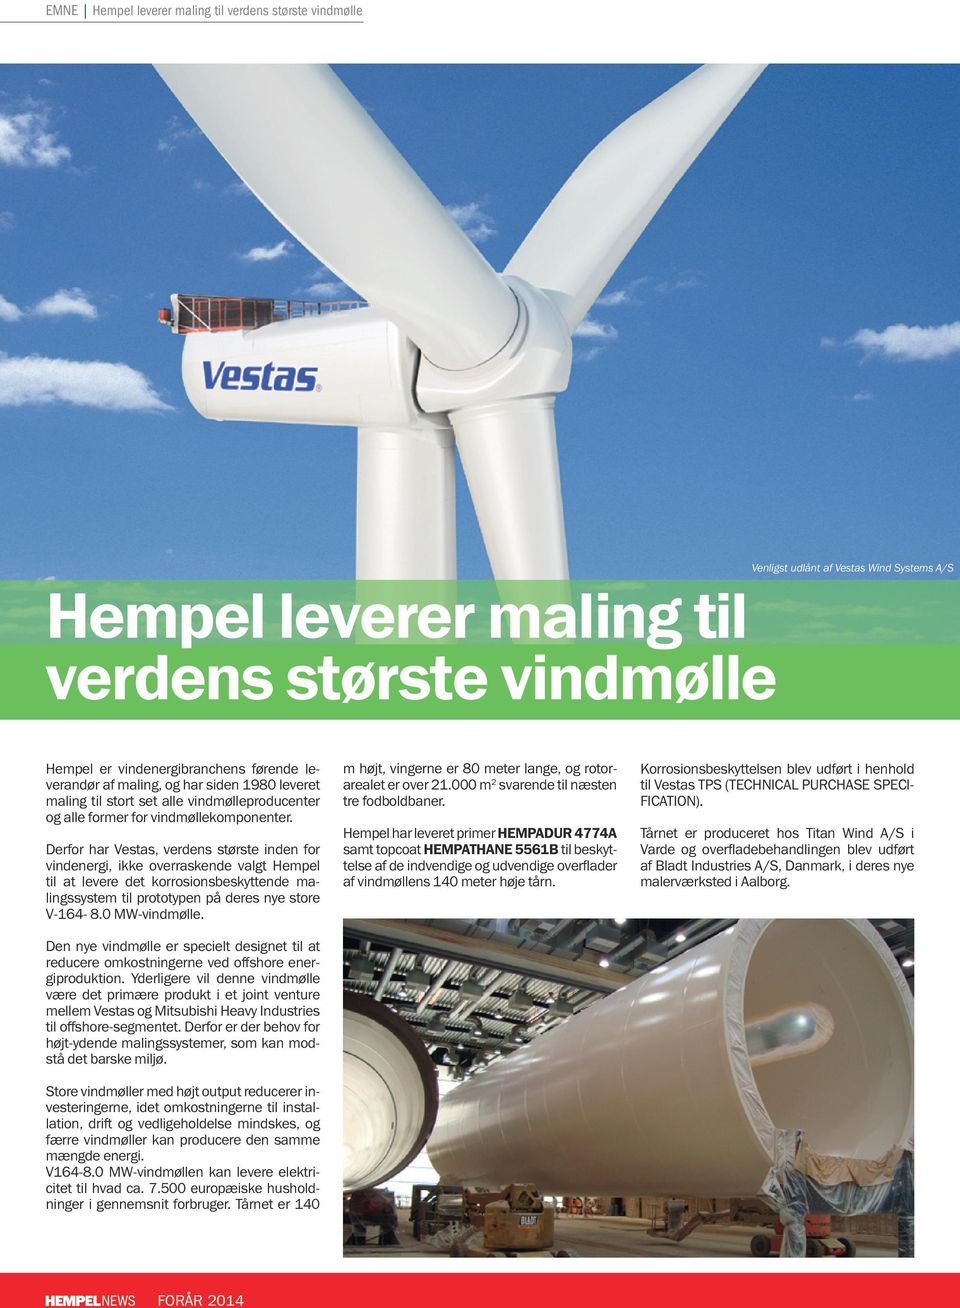 Derfor har Vestas, verdens største inden for vindenergi, ikke overraskende valgt Hempel til at levere det korrosionsbeskyttende malingssystem til prototypen på deres nye store V-164-8.0 MW-vindmølle.